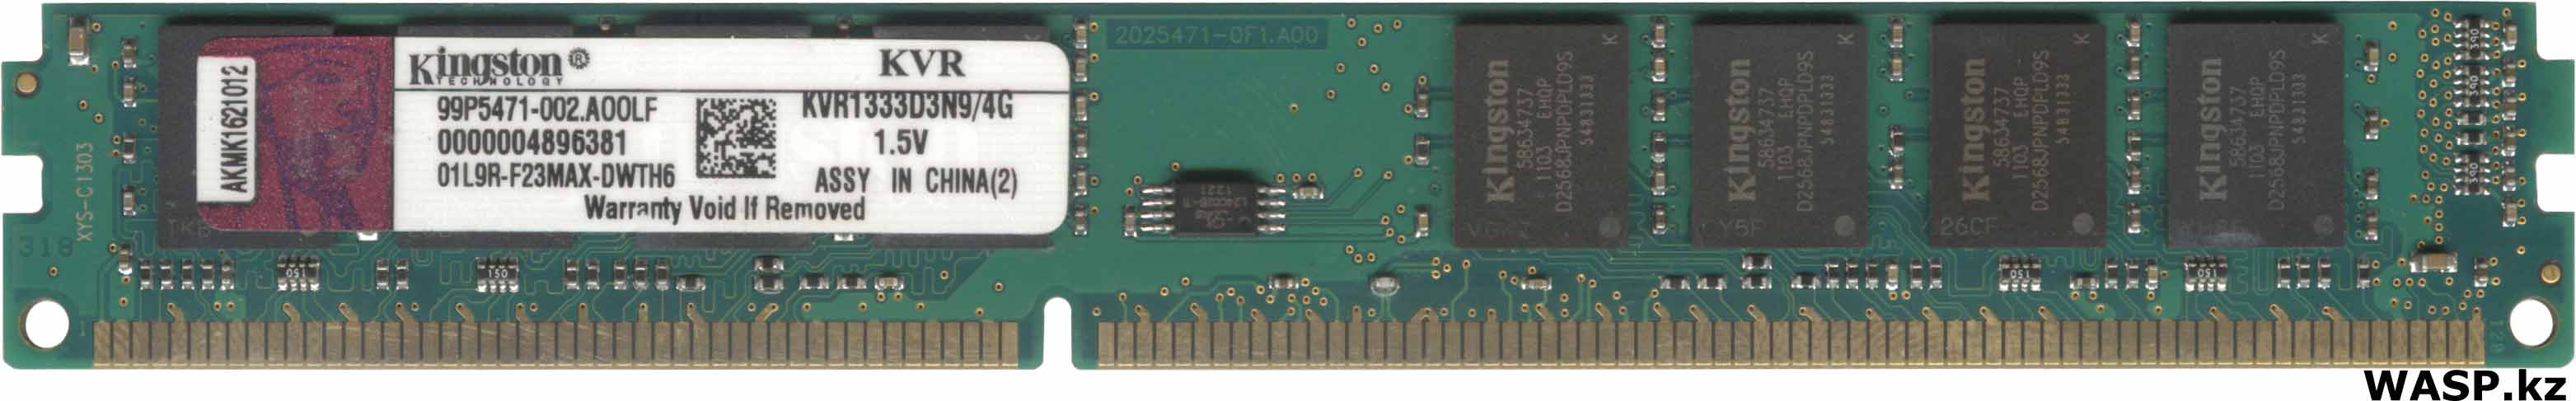 Kingston KVR133D3N9/4G - оперативная память, 4 Гб, DDR3